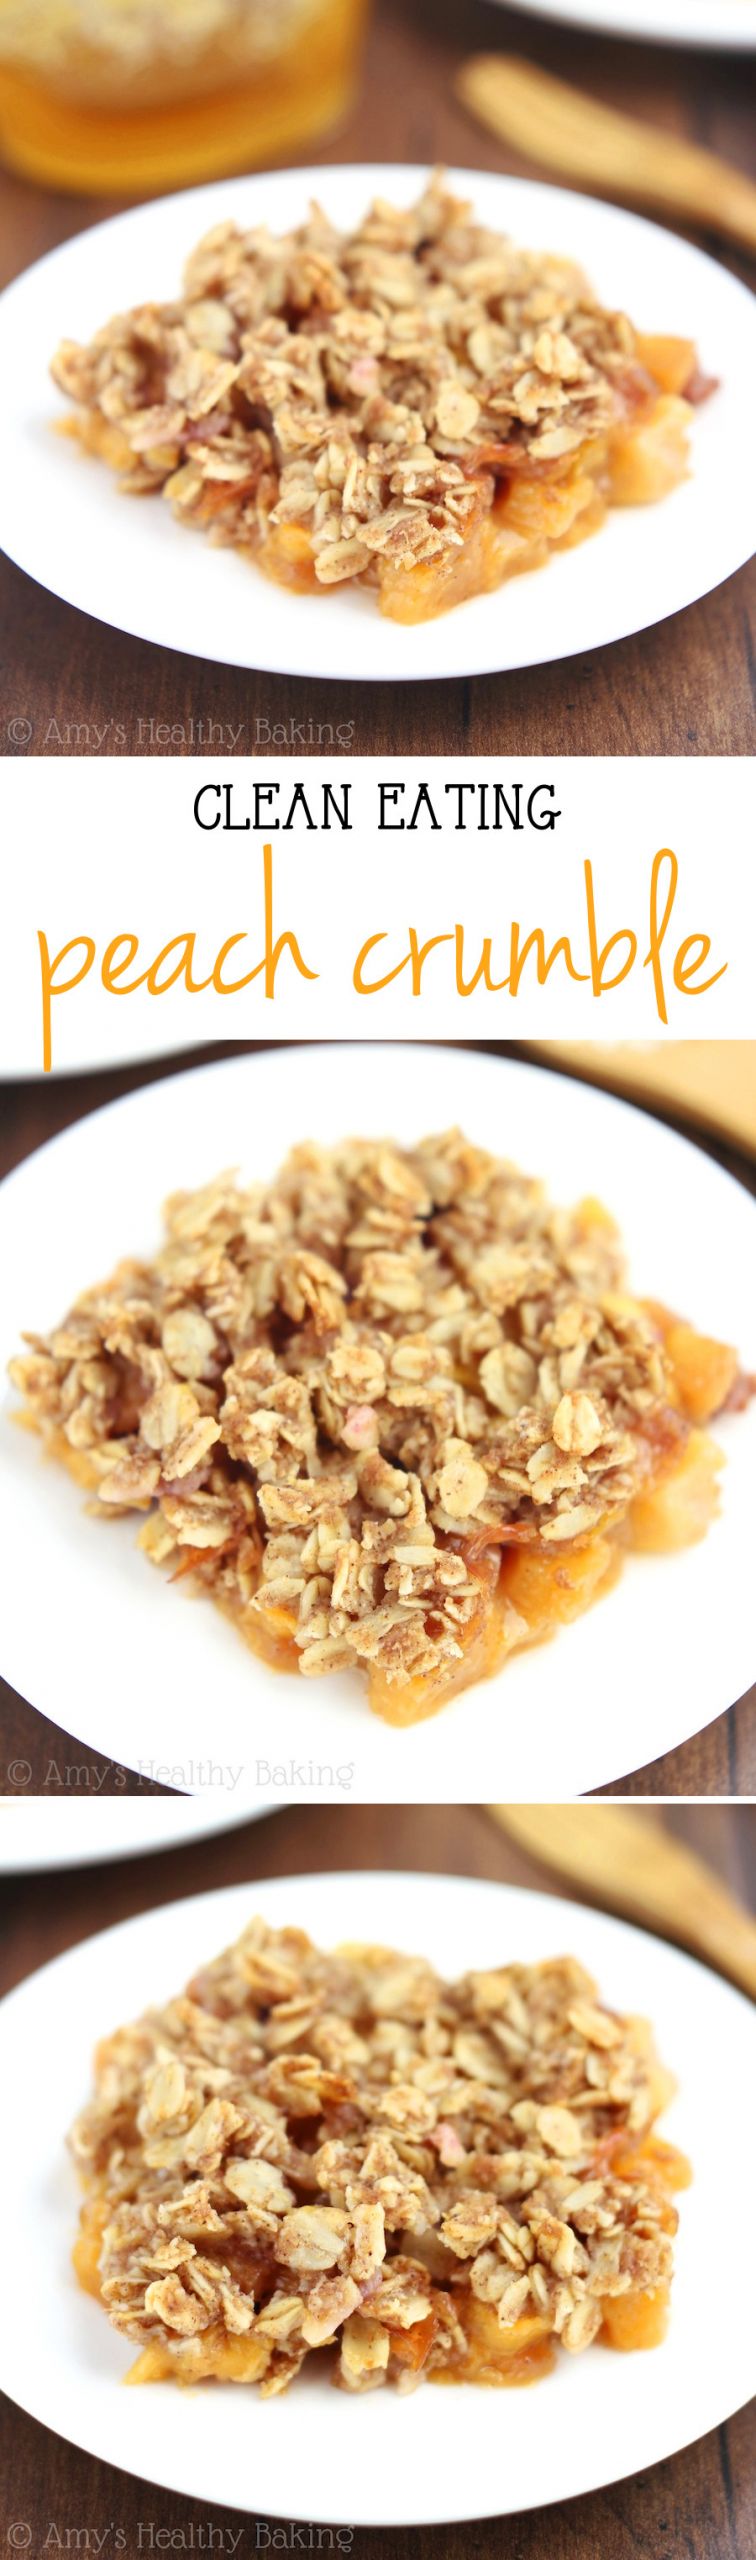 Healthy Peach Recipes
 Clean Peach Crumble